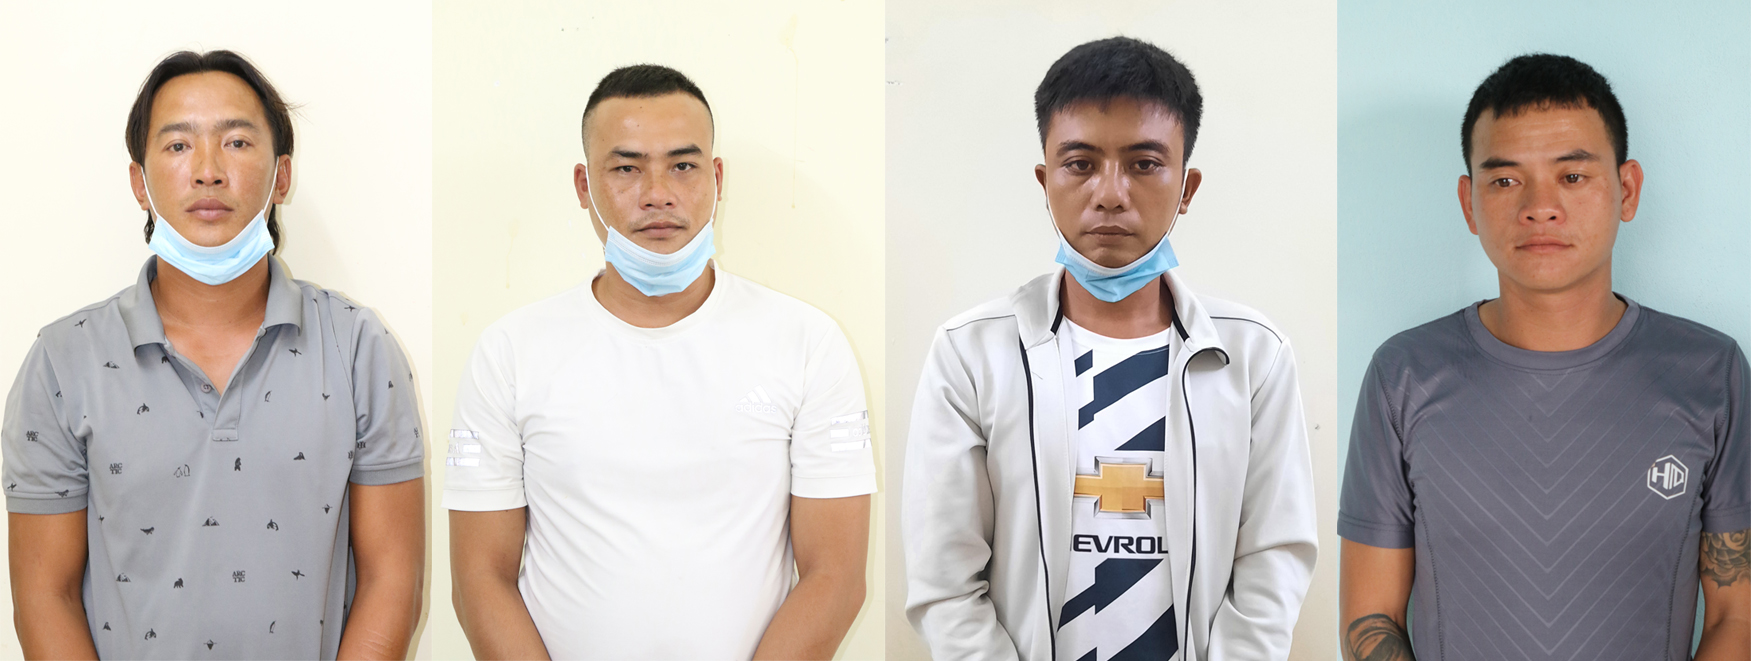 Phan Sinh Thành (ngoài cùng, bên trái) và các đối tượng bị bắt giữ để phục vụ công tác điều tra.